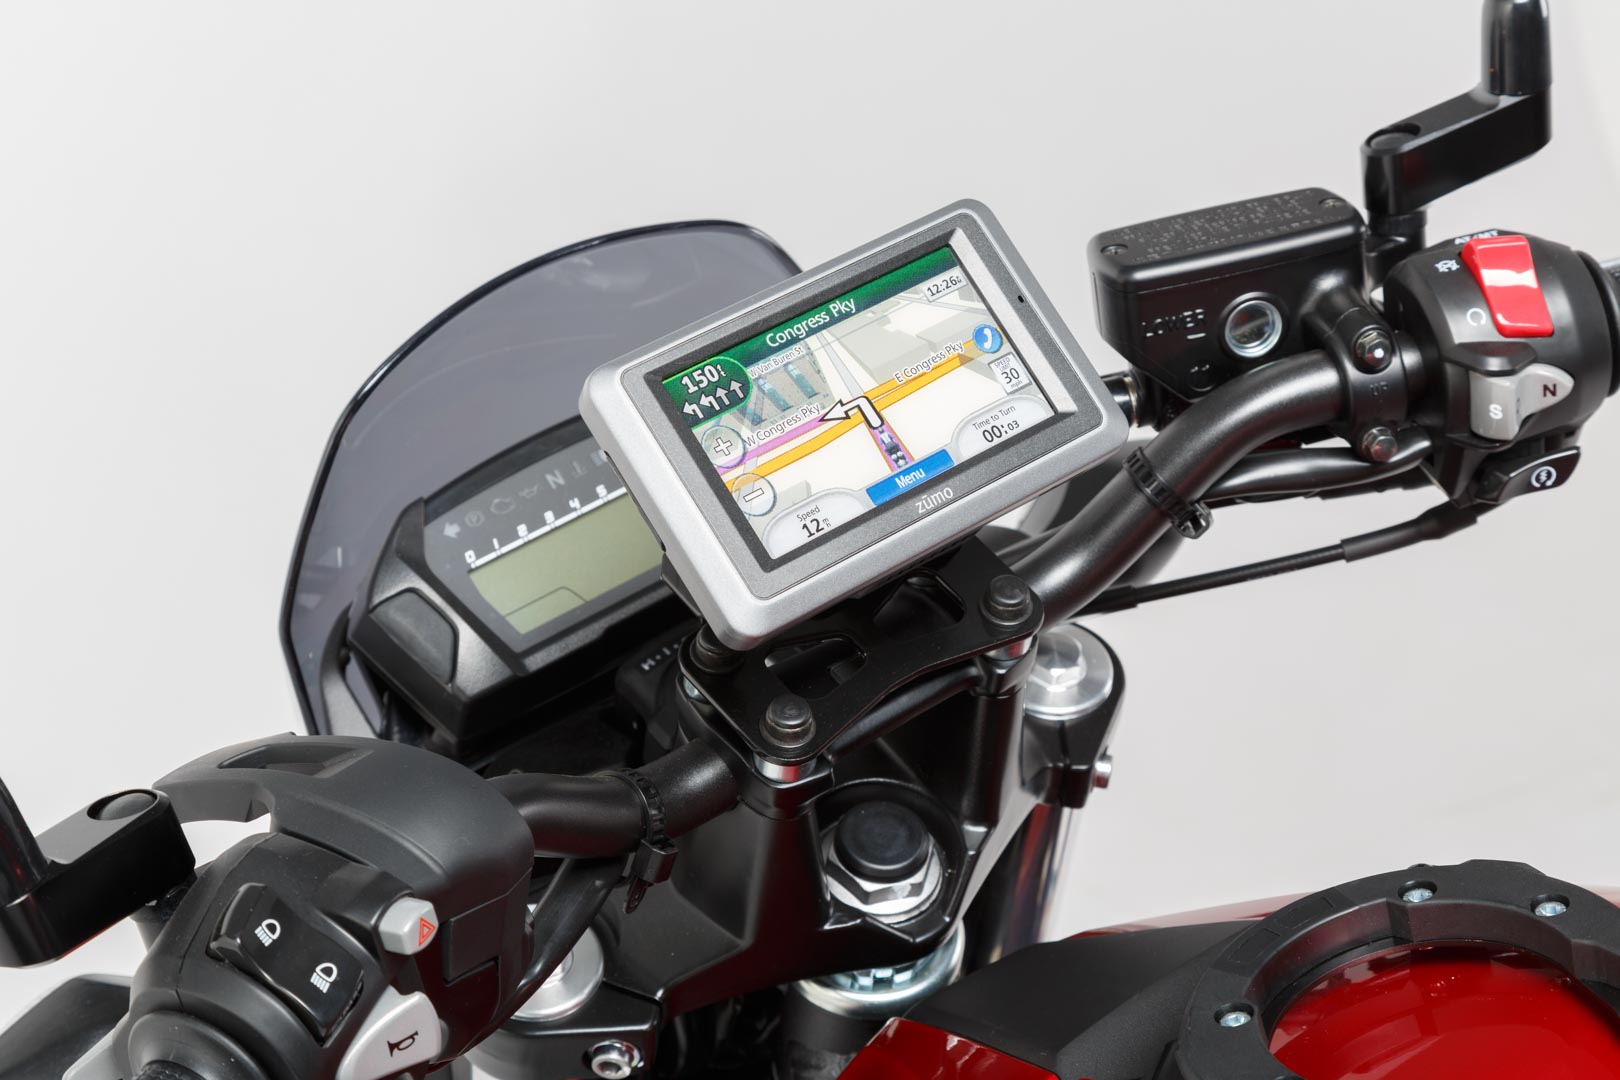 SW-Motech Supporto GPS  per manubrio - Nero. Modelli BMW / Honda / Suzuki. Nero unica taglia